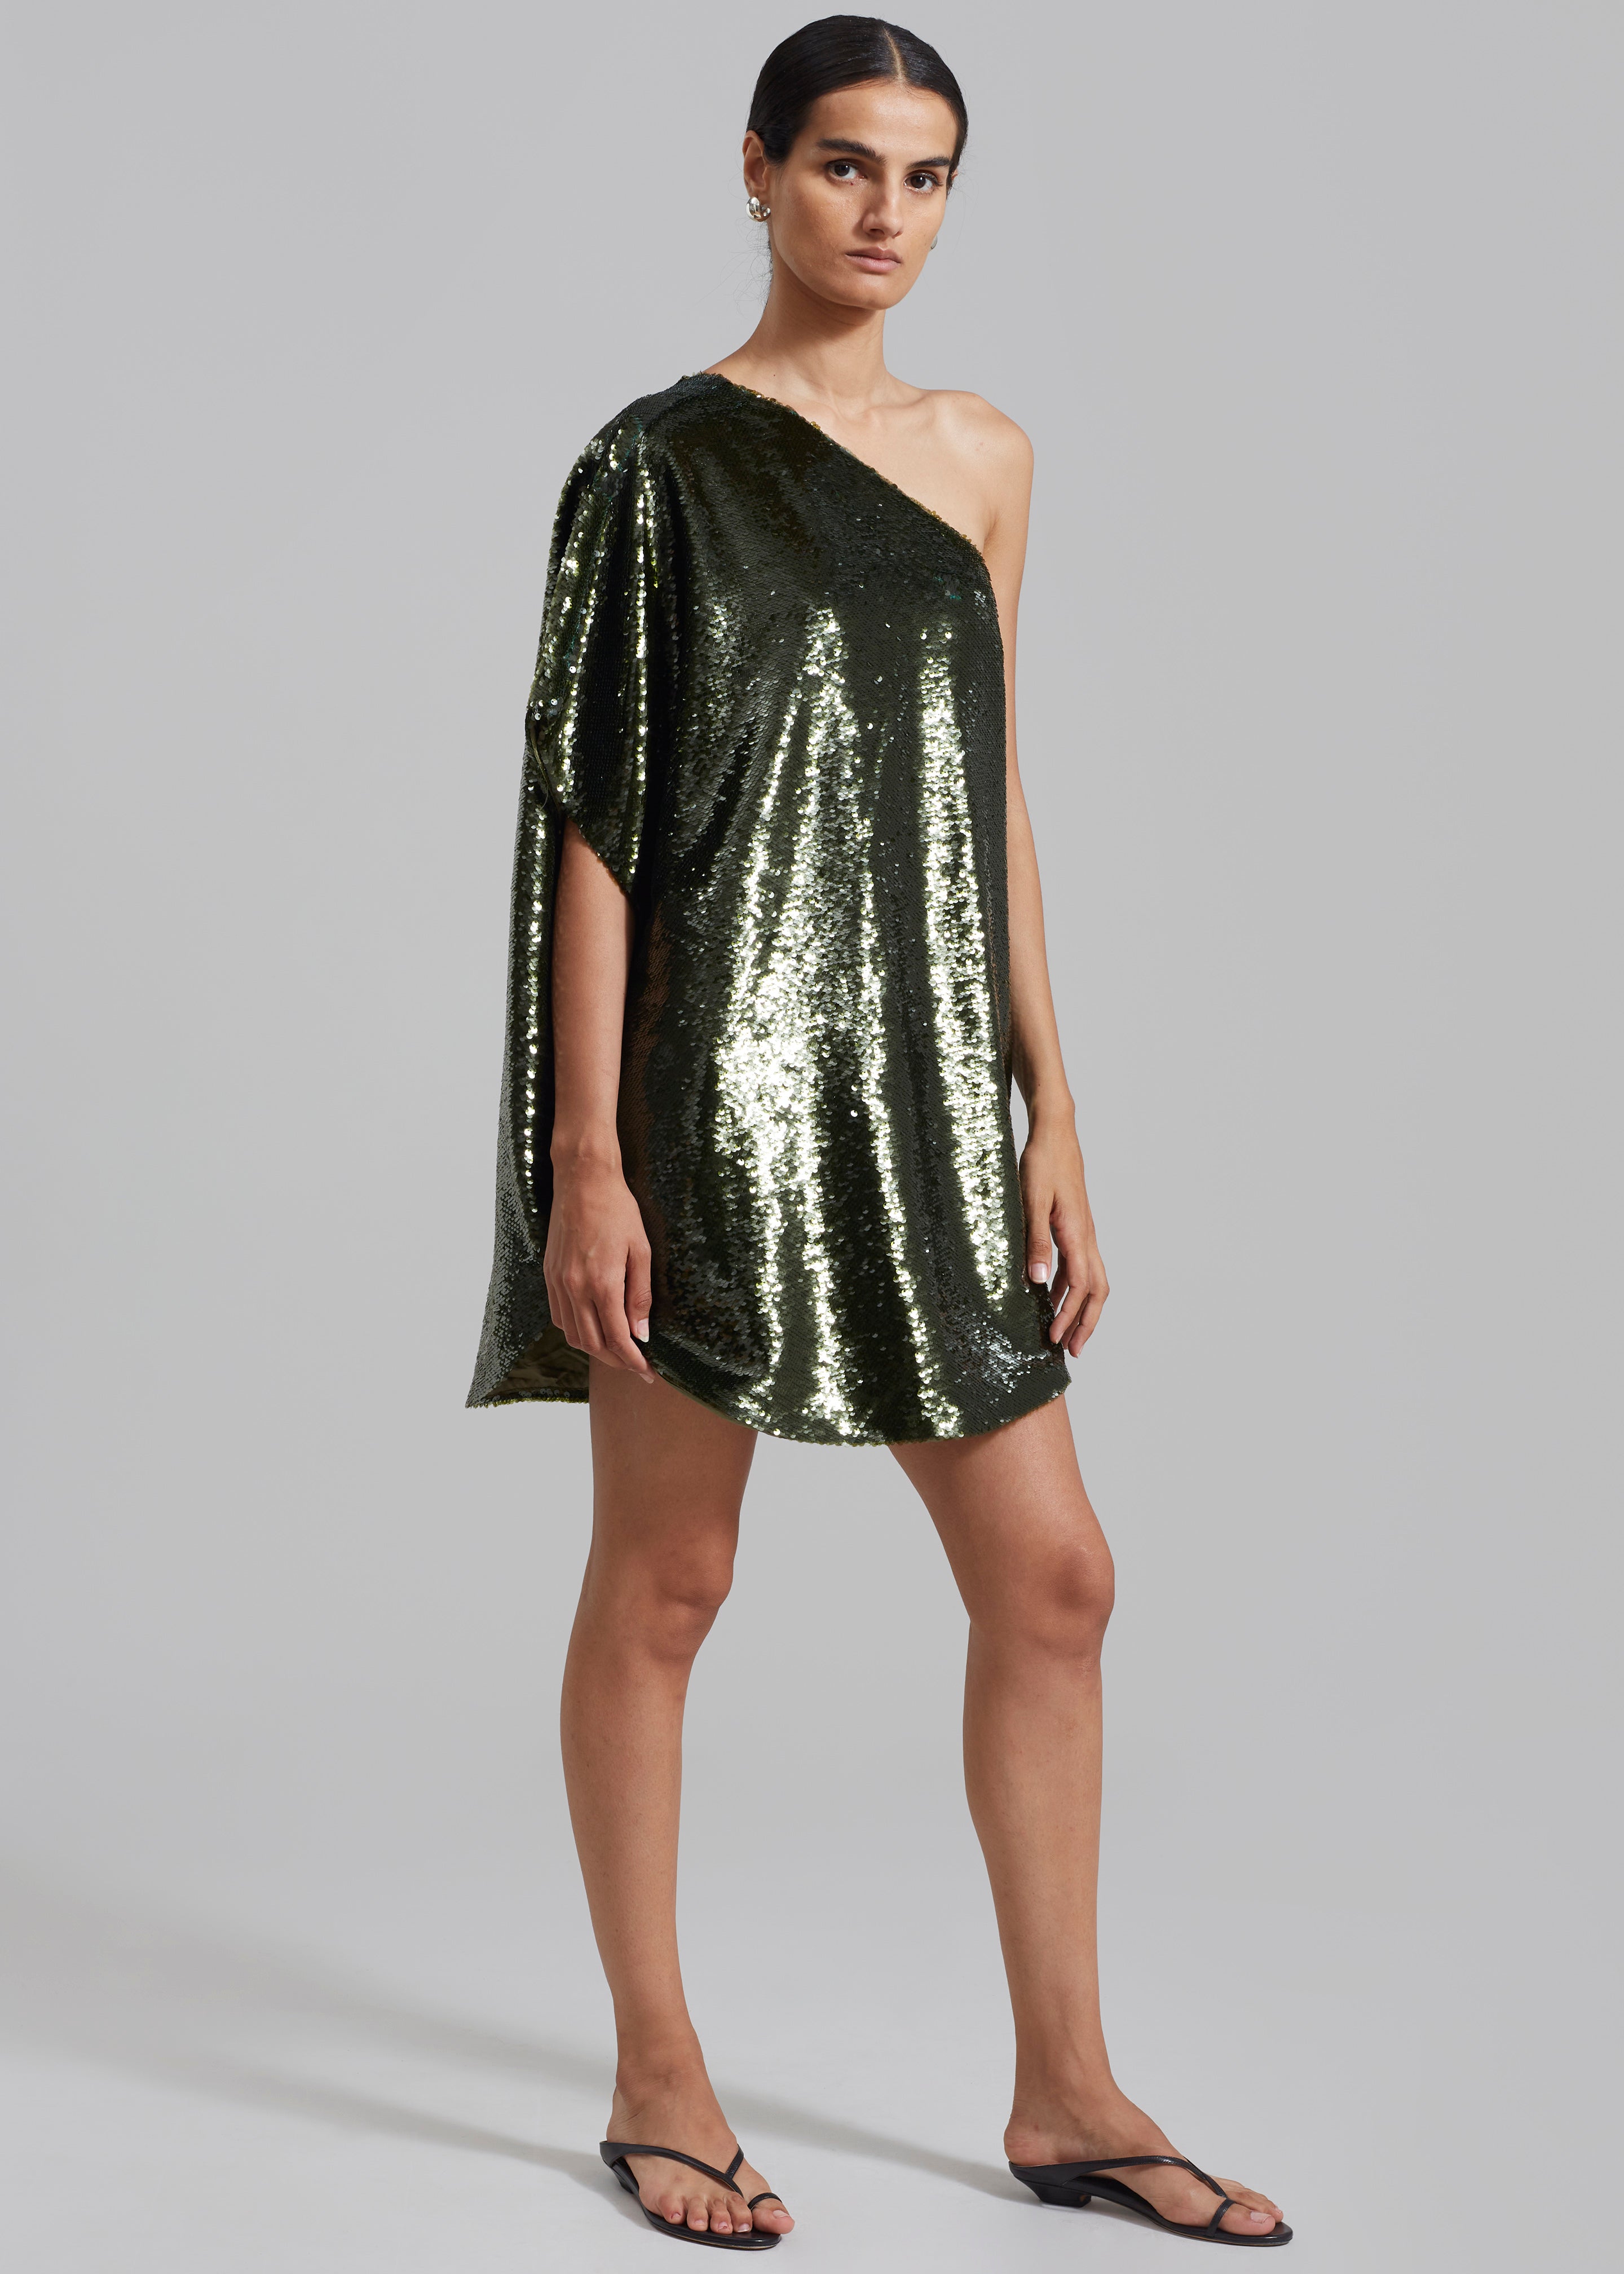 Gloria Sequins One Shoulder Dress - Olive - 4